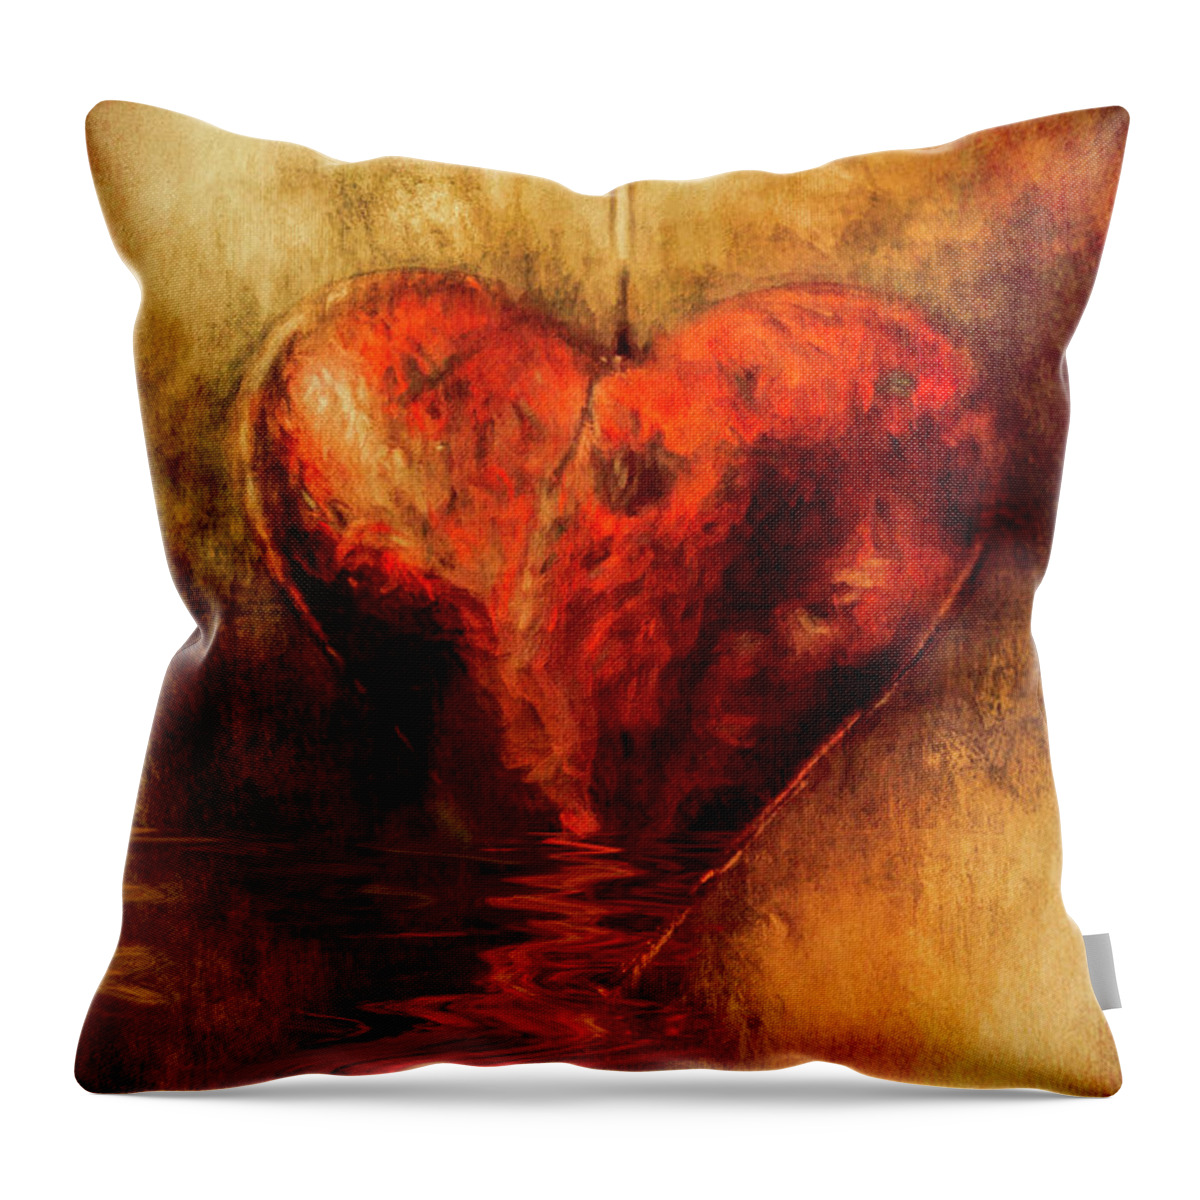 Heart Throw Pillow featuring the digital art Broken Hearted by Elaine Teague